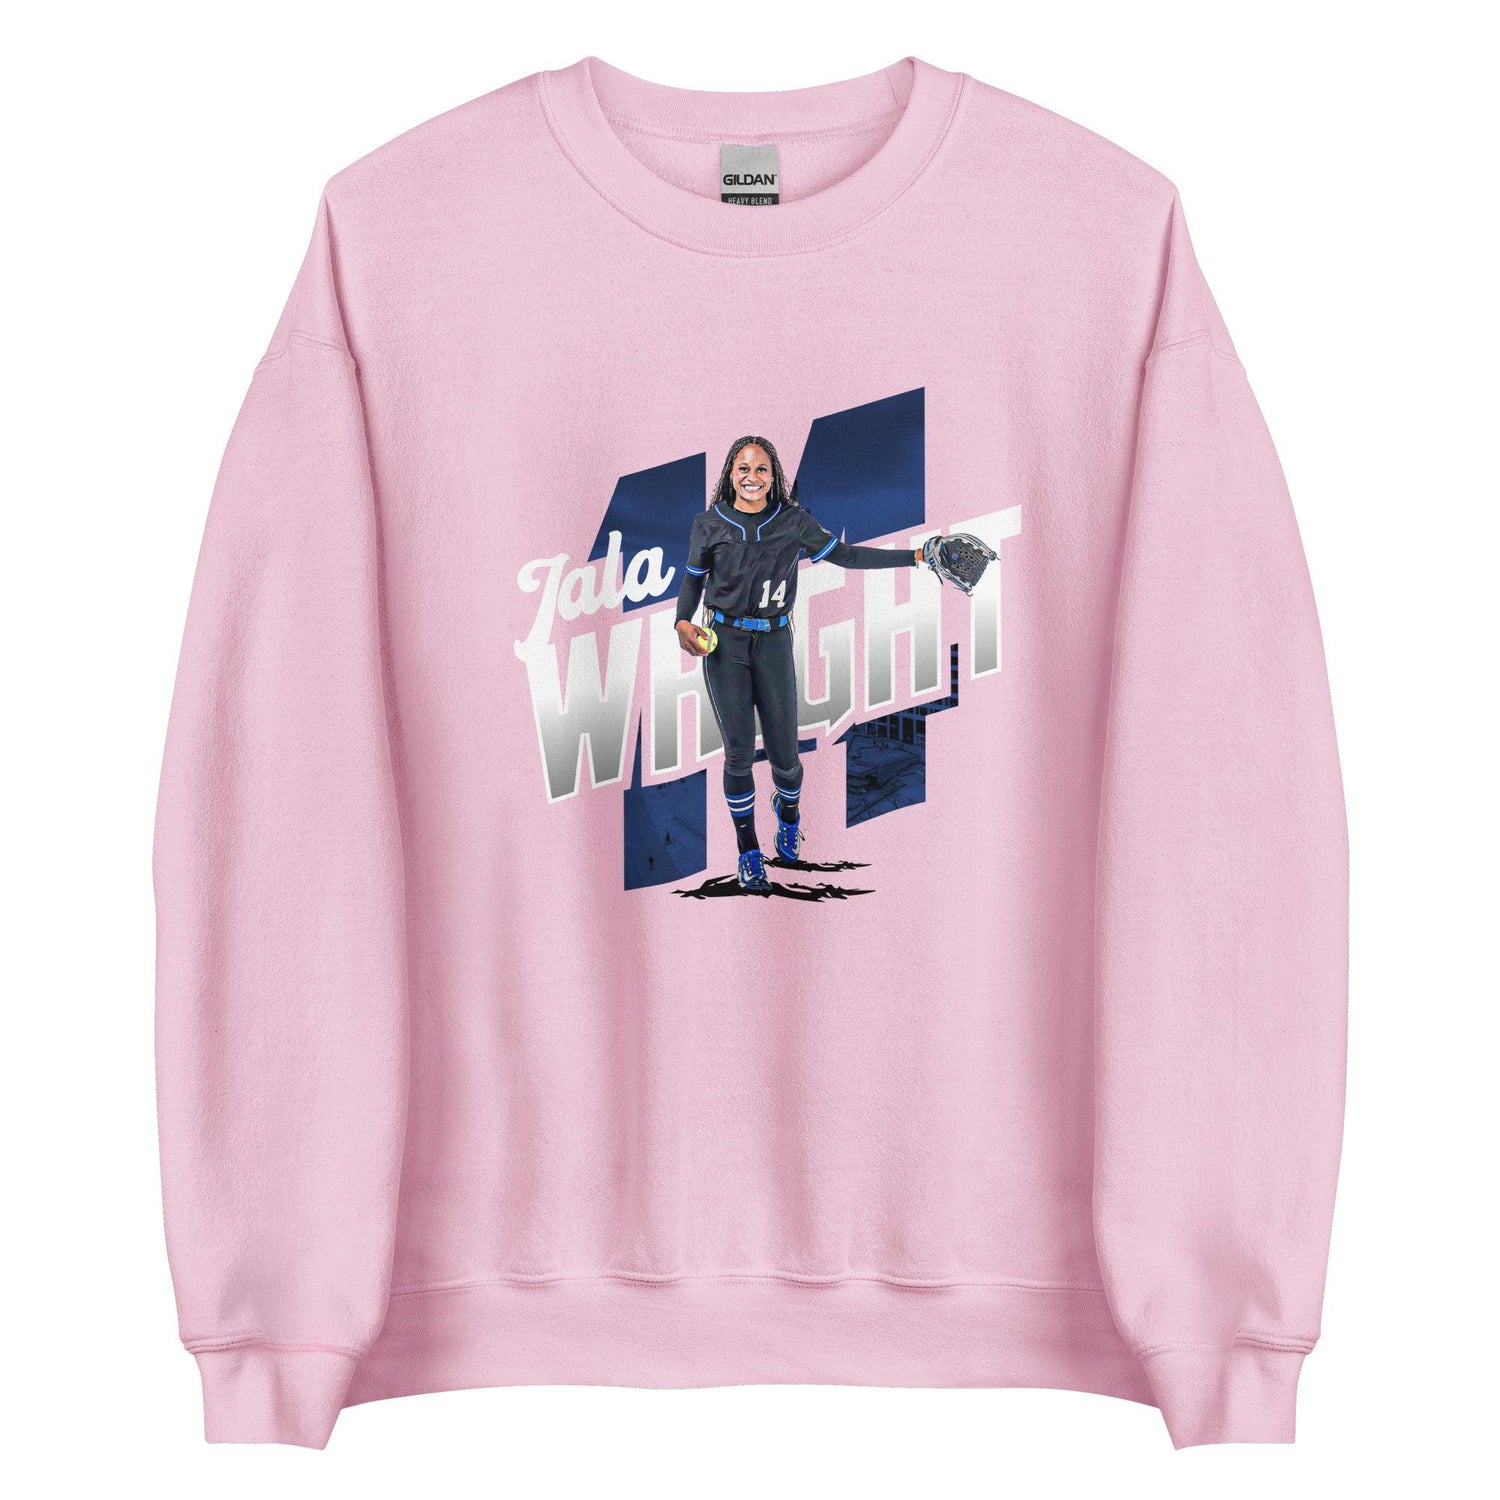 Jala Wright "Gameday" Sweatshirt - Fan Arch